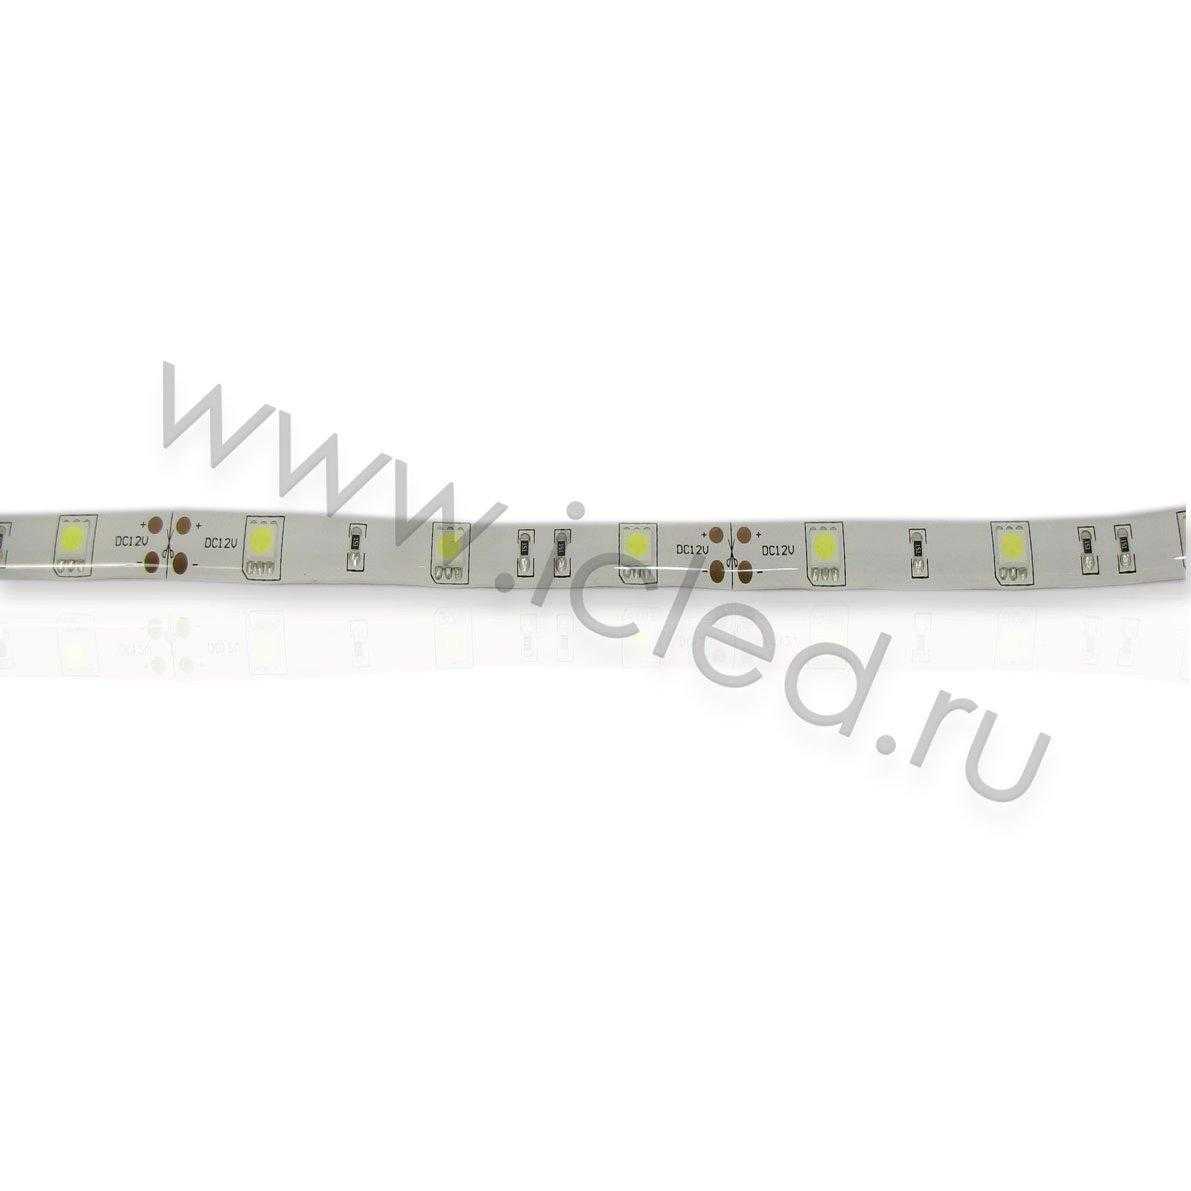 Влагозащищенные светодиодные ленты Светодиодная лента Standart PRO class, 5050, 30 led/m, White, 12V, IP65 Icled